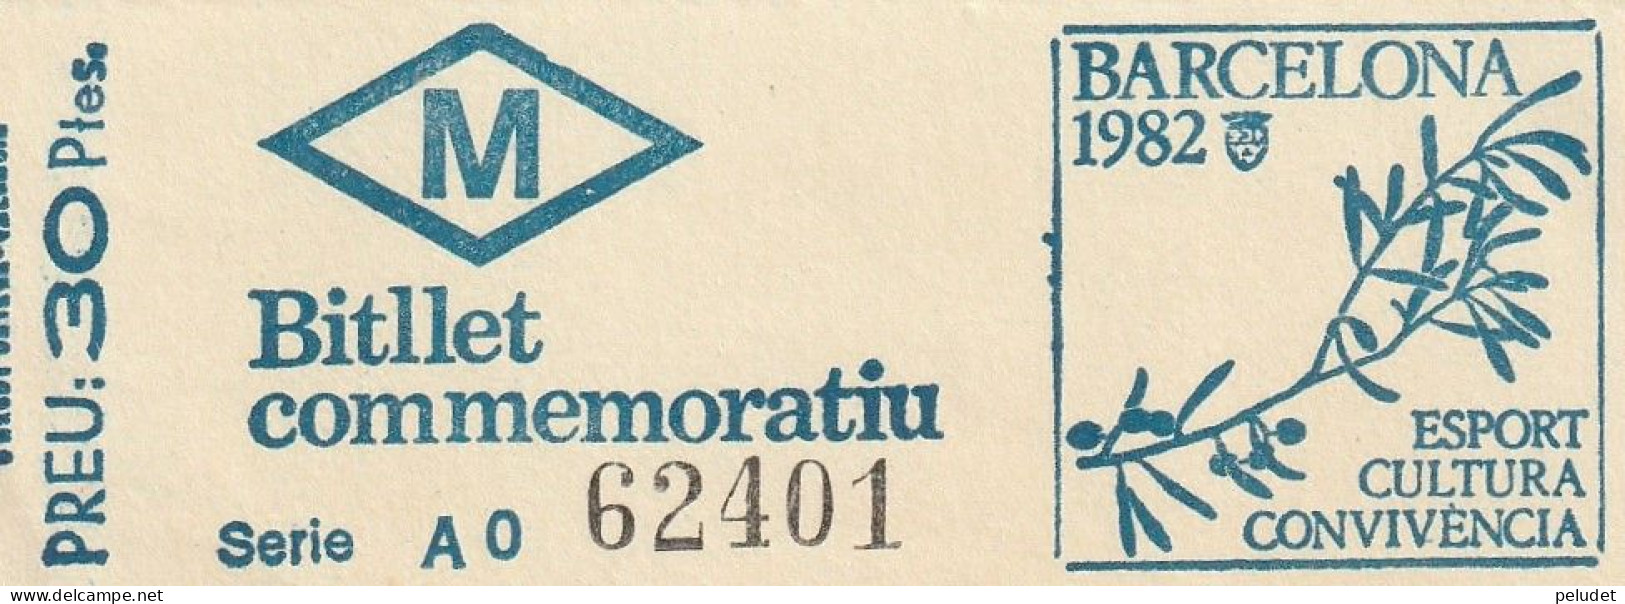 Ticket Billet Billet -- Billet Commemoratiu - Metro Barcelona - 1982 - Europe